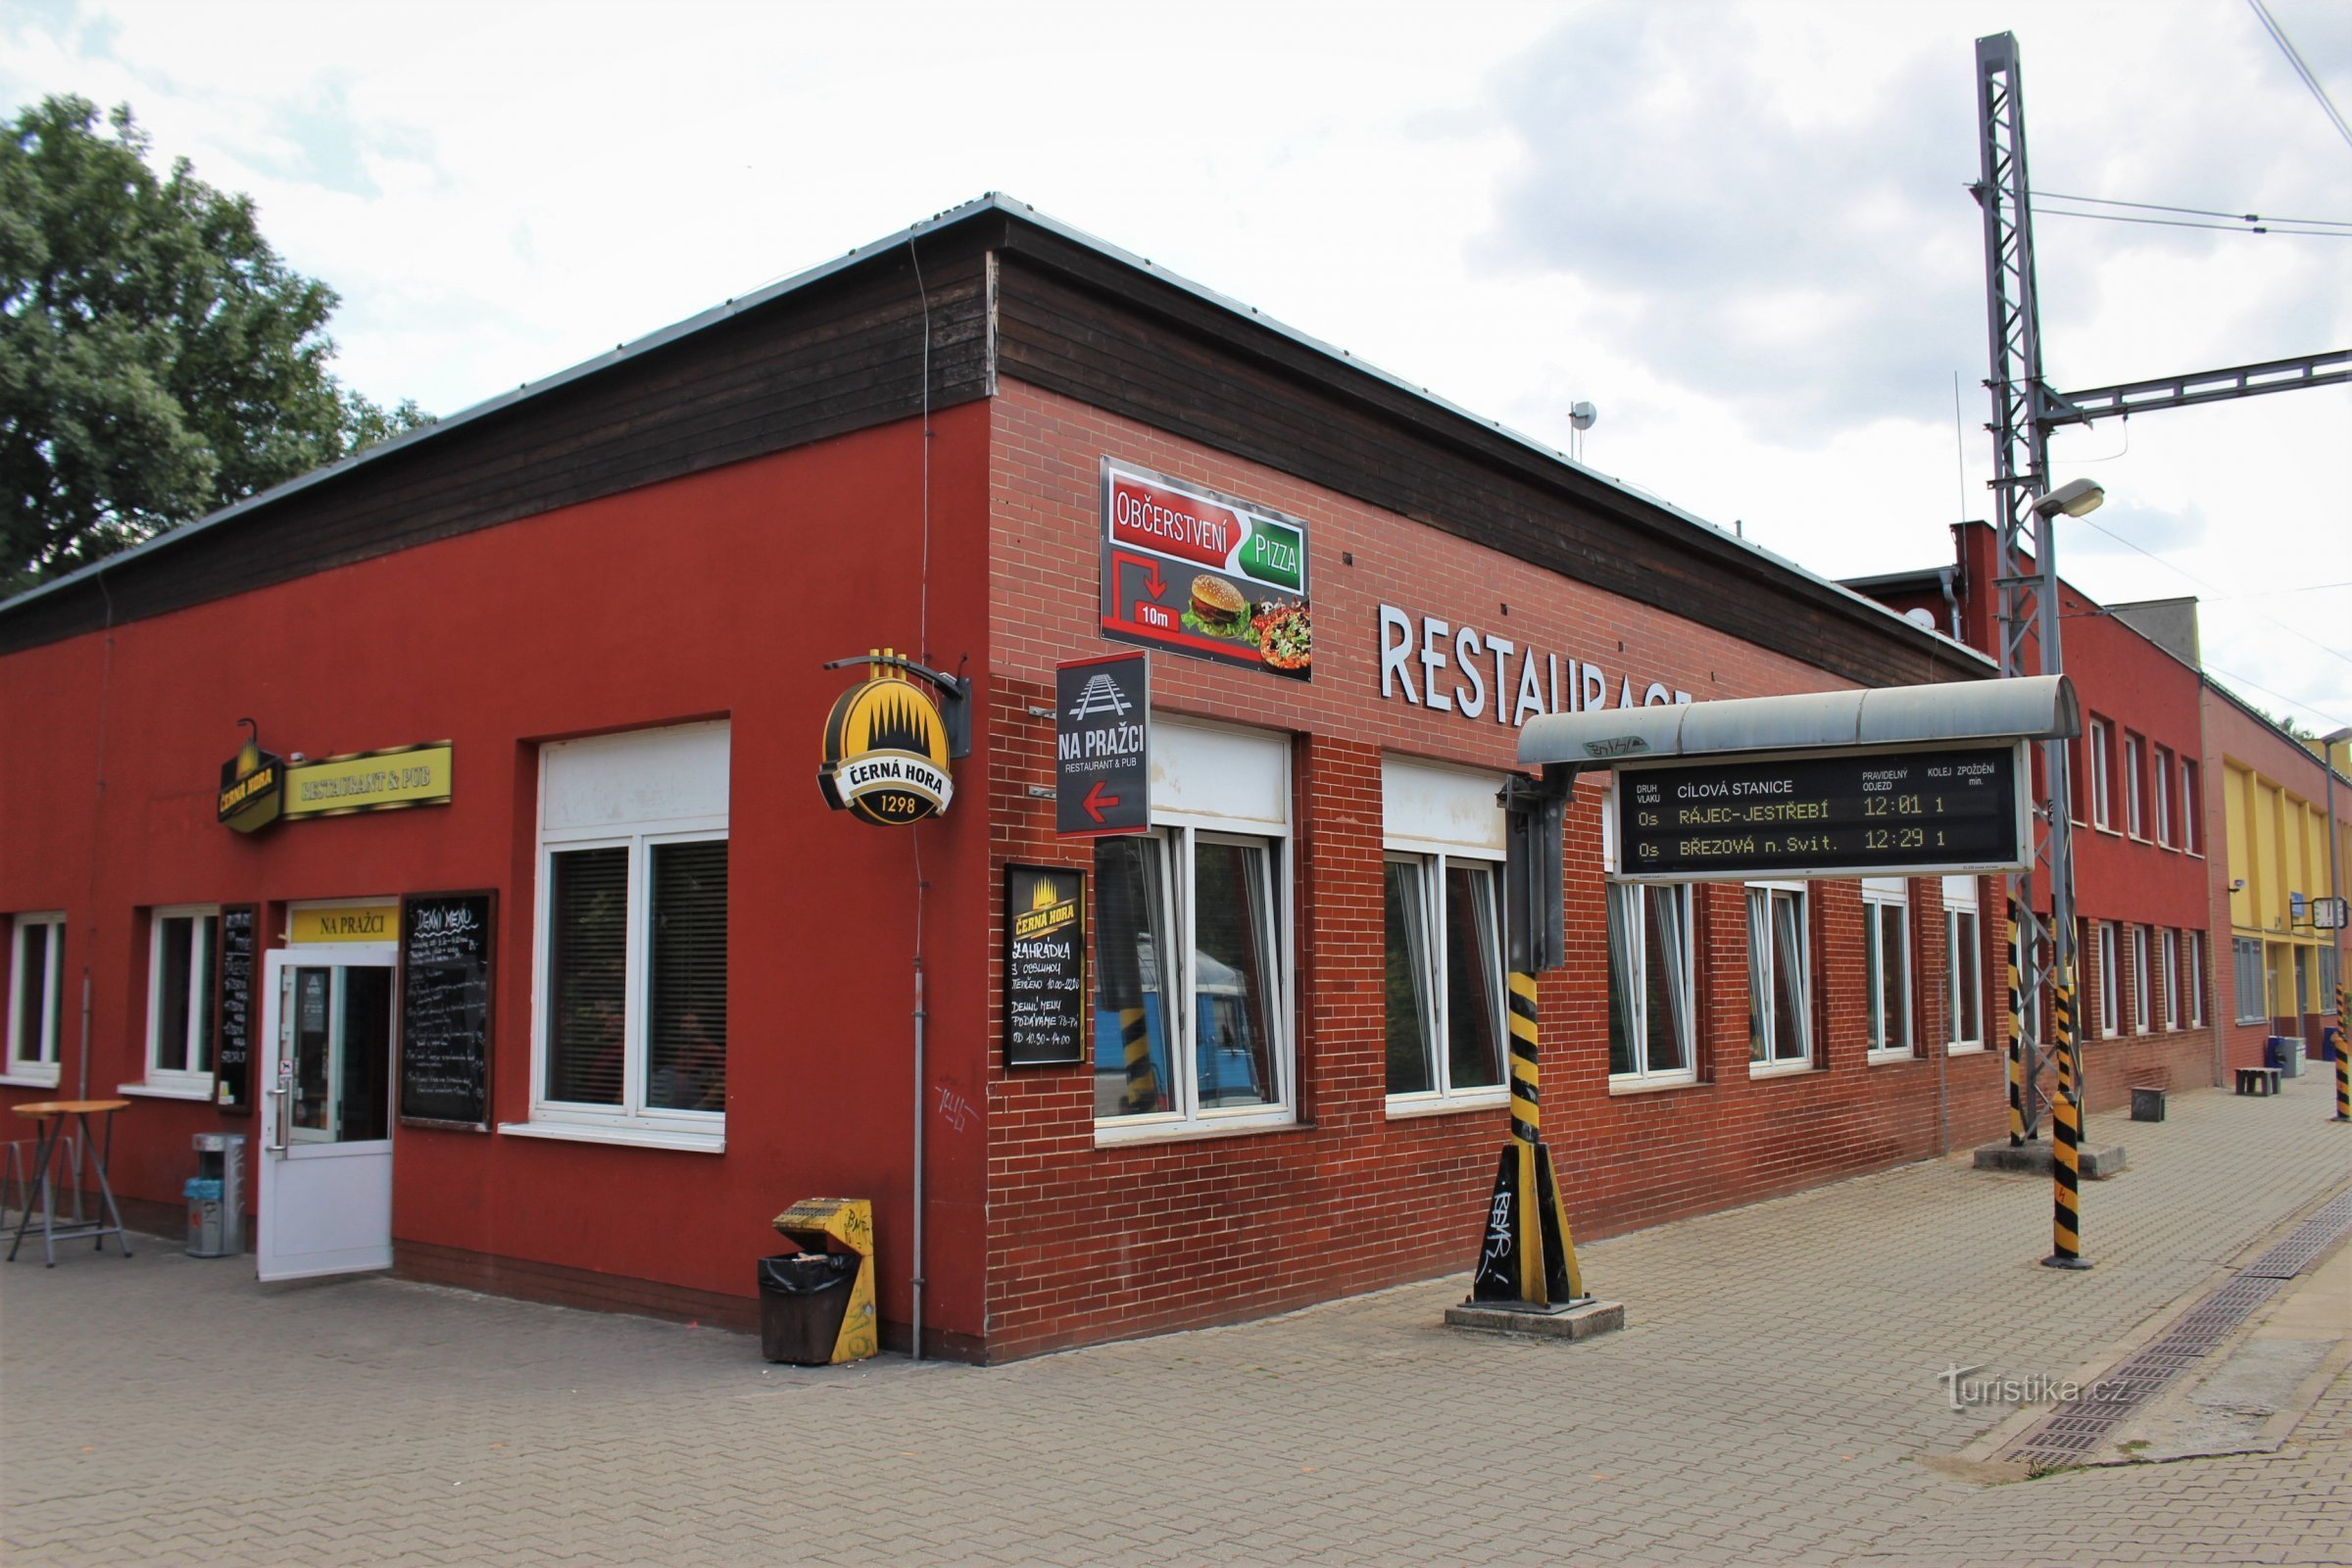 Blanenské nádraží avec le restaurant Na pražci